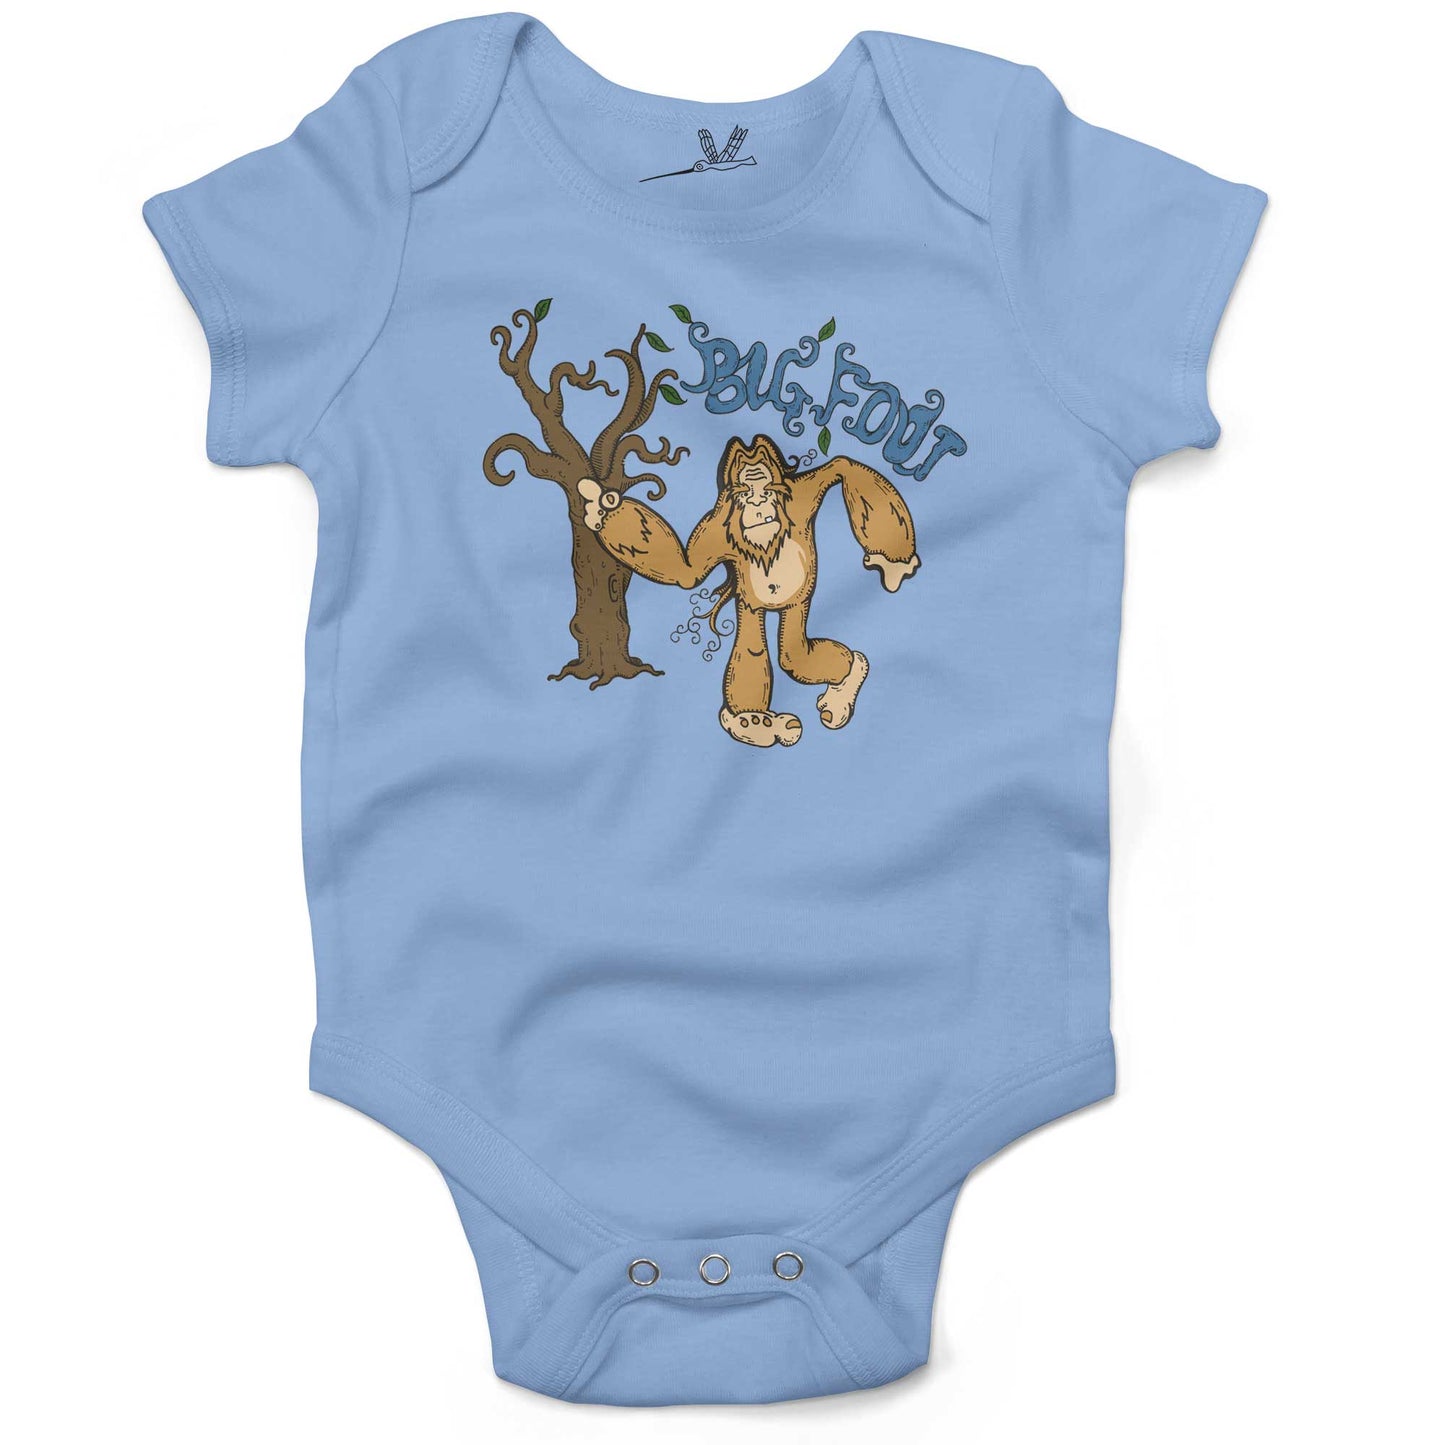 Bigfoot Infant Bodysuit or Raglan Baby Tee-Organic Baby Blue-3-6 months